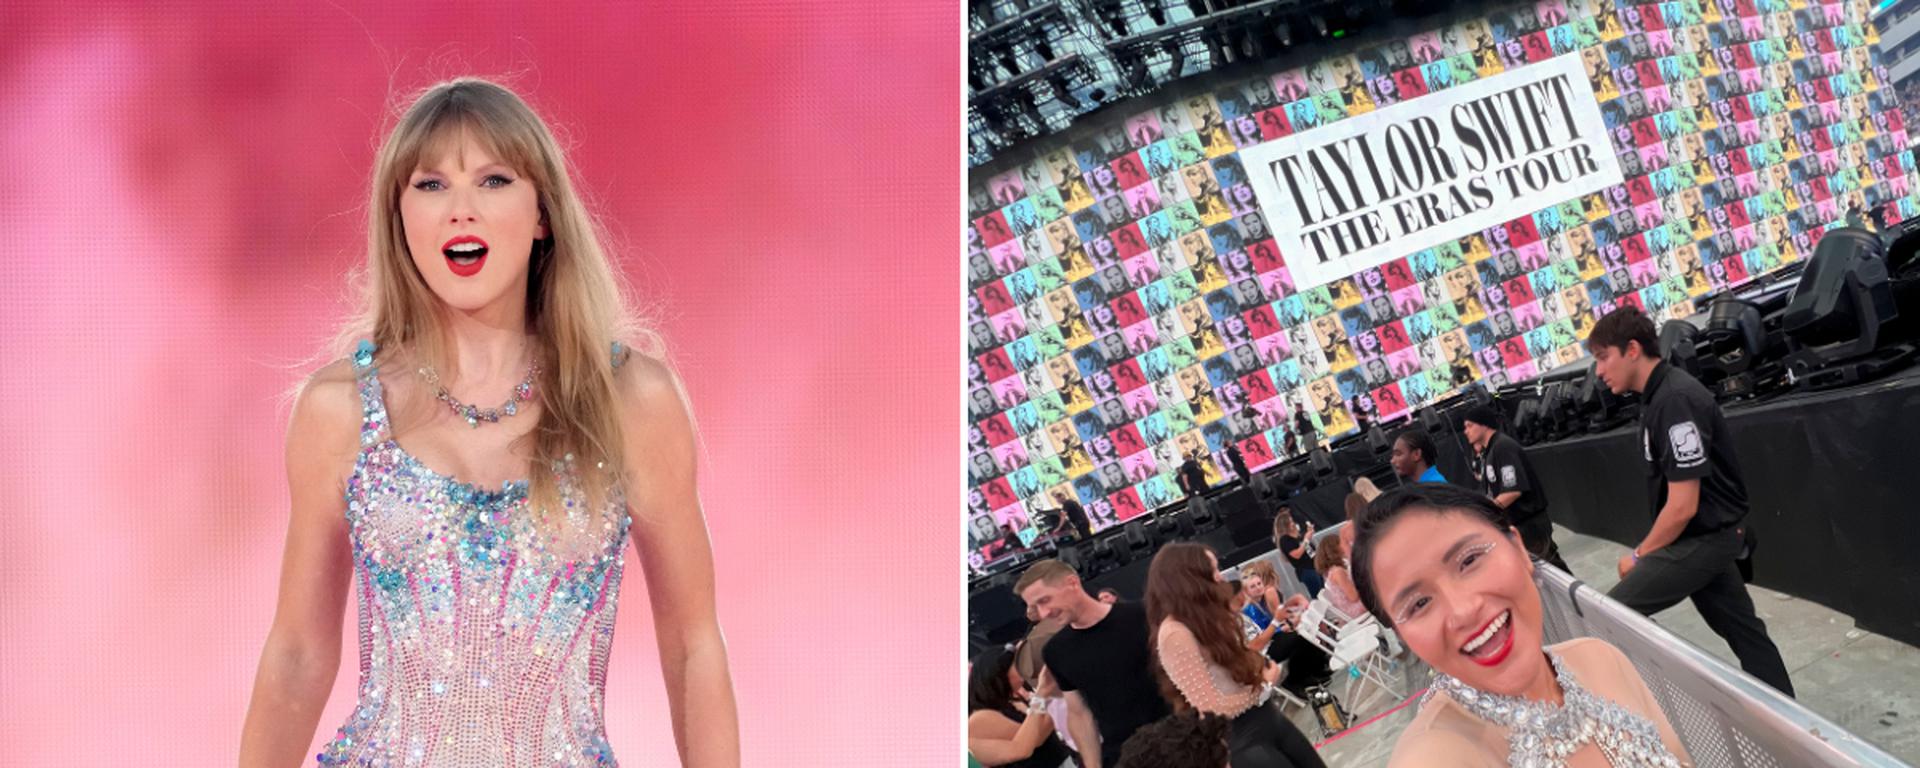 Taylor Swift: quiénes son las “swifties” de Perú y cuánto invirtieron para ver en vivo a la estrella del momento